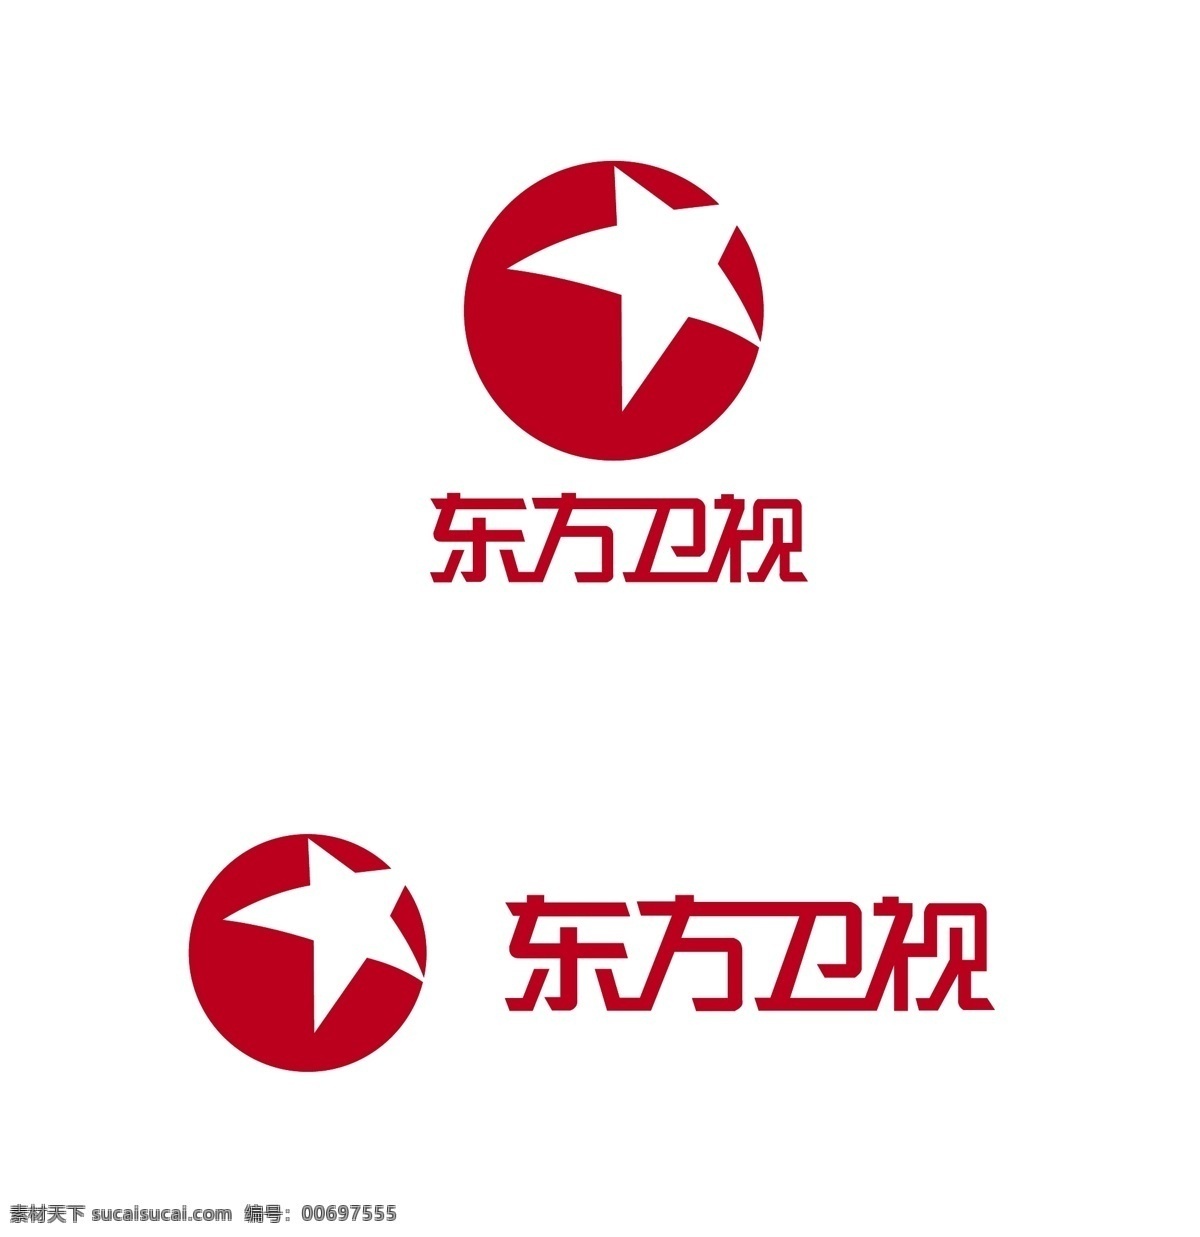 东方卫视 logo 标志 红色 五角星 上海 电视台 矢量 企业 标识标志图标